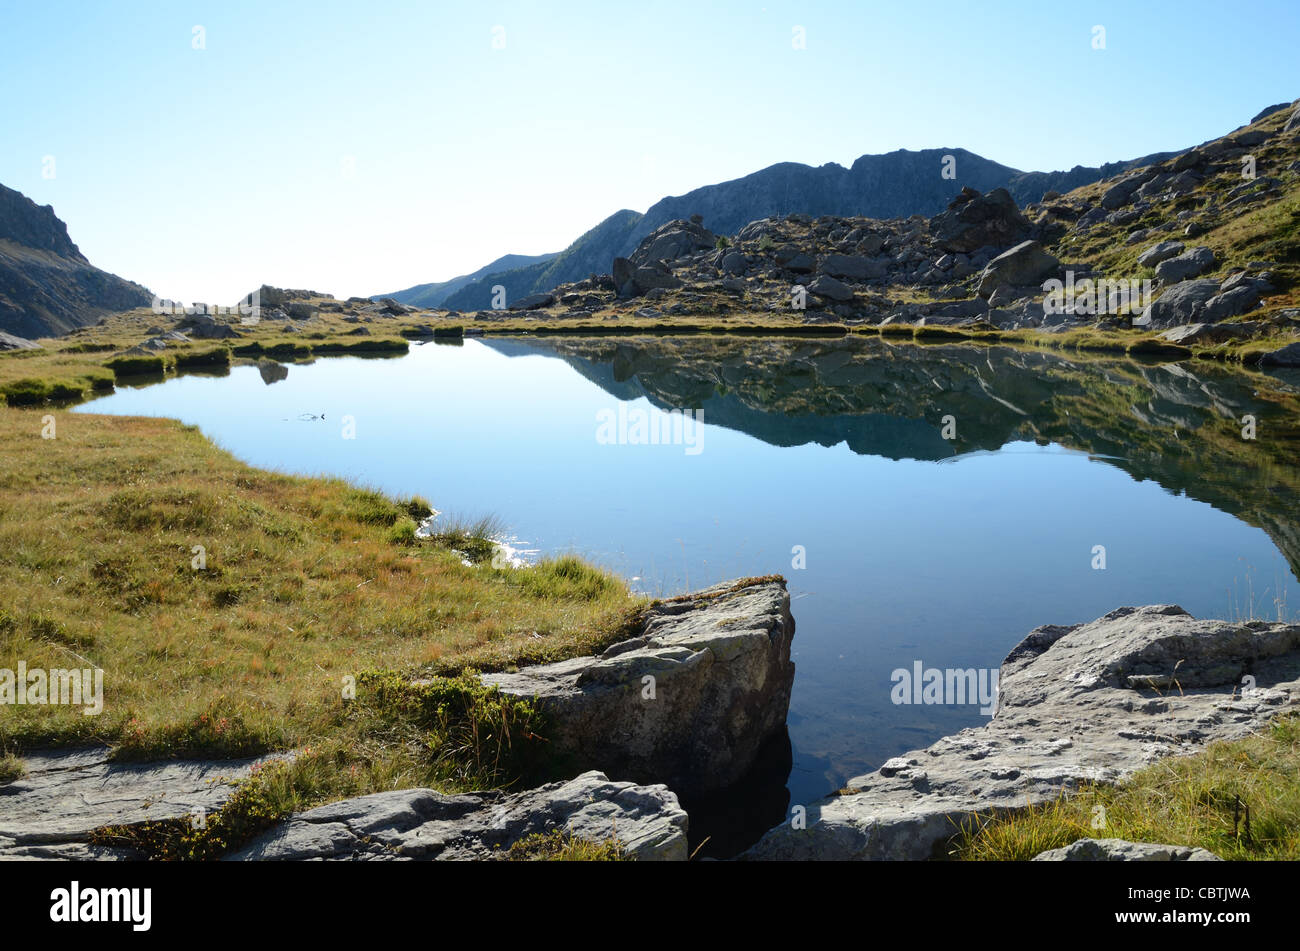 Torfsee, Vallée des Merveilles, oder Tal der Wunder, Mercantour Nationalpark südlichen französischen Alpen Alpes-Maritimes Frankreich Stockfoto